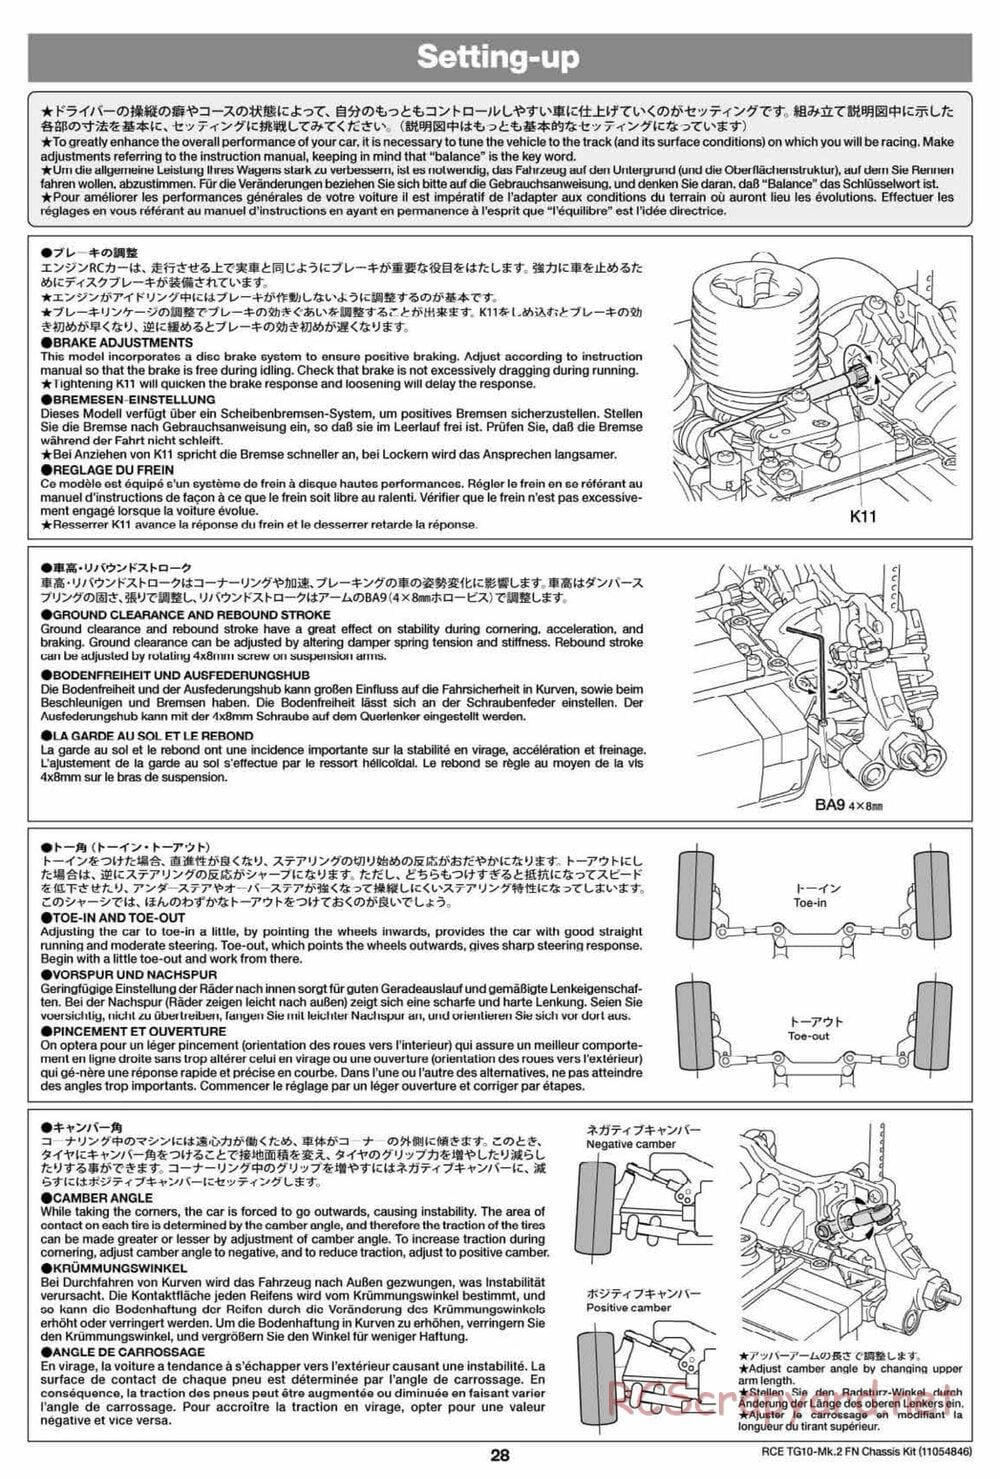 Tamiya - TG10 Mk.2 FN Chassis - Manual - Page 28